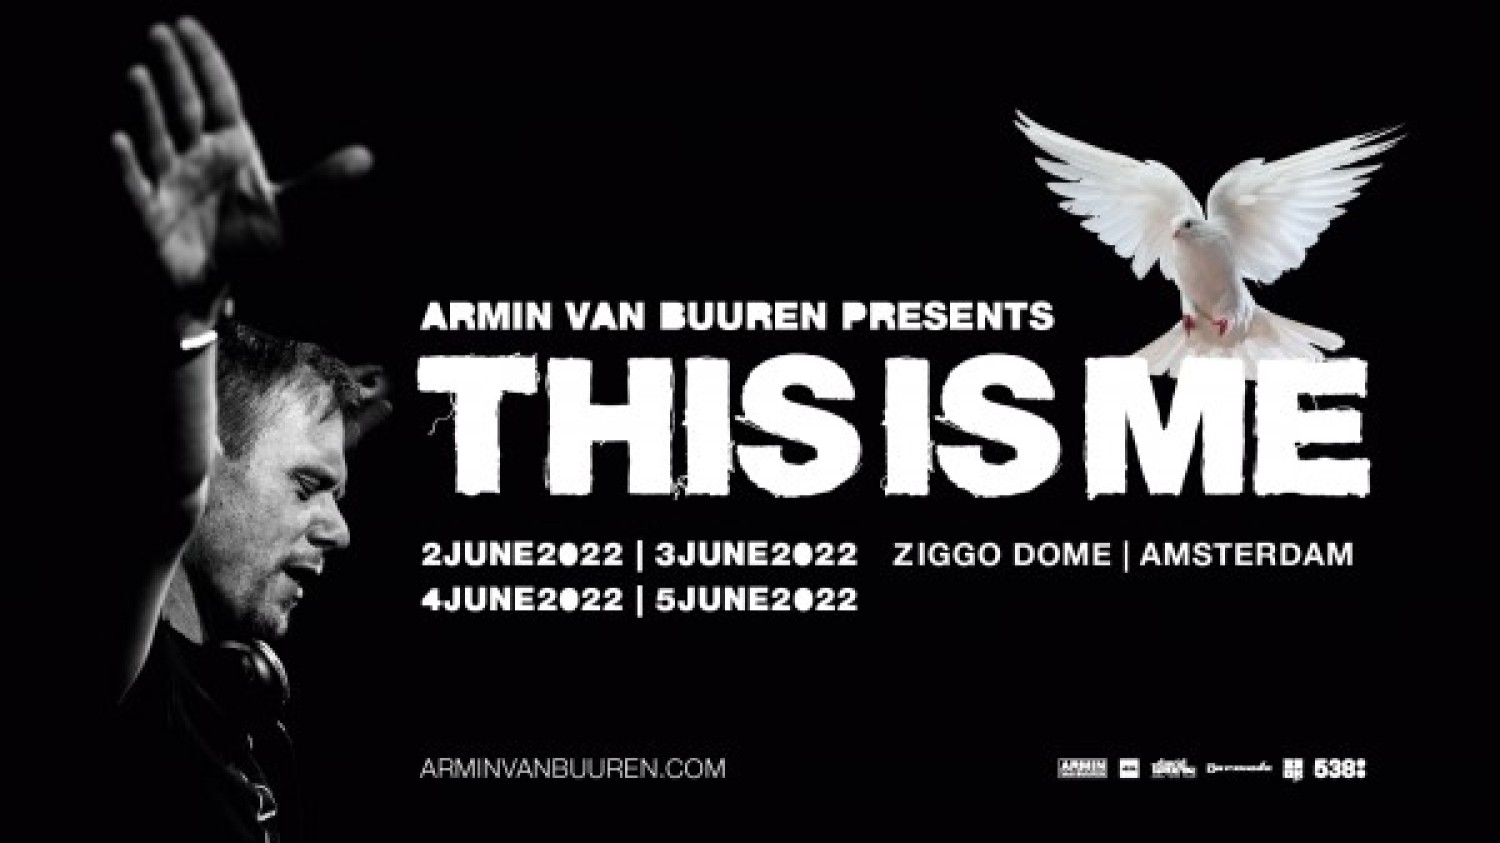 Armin van Buuren presents This Is Me